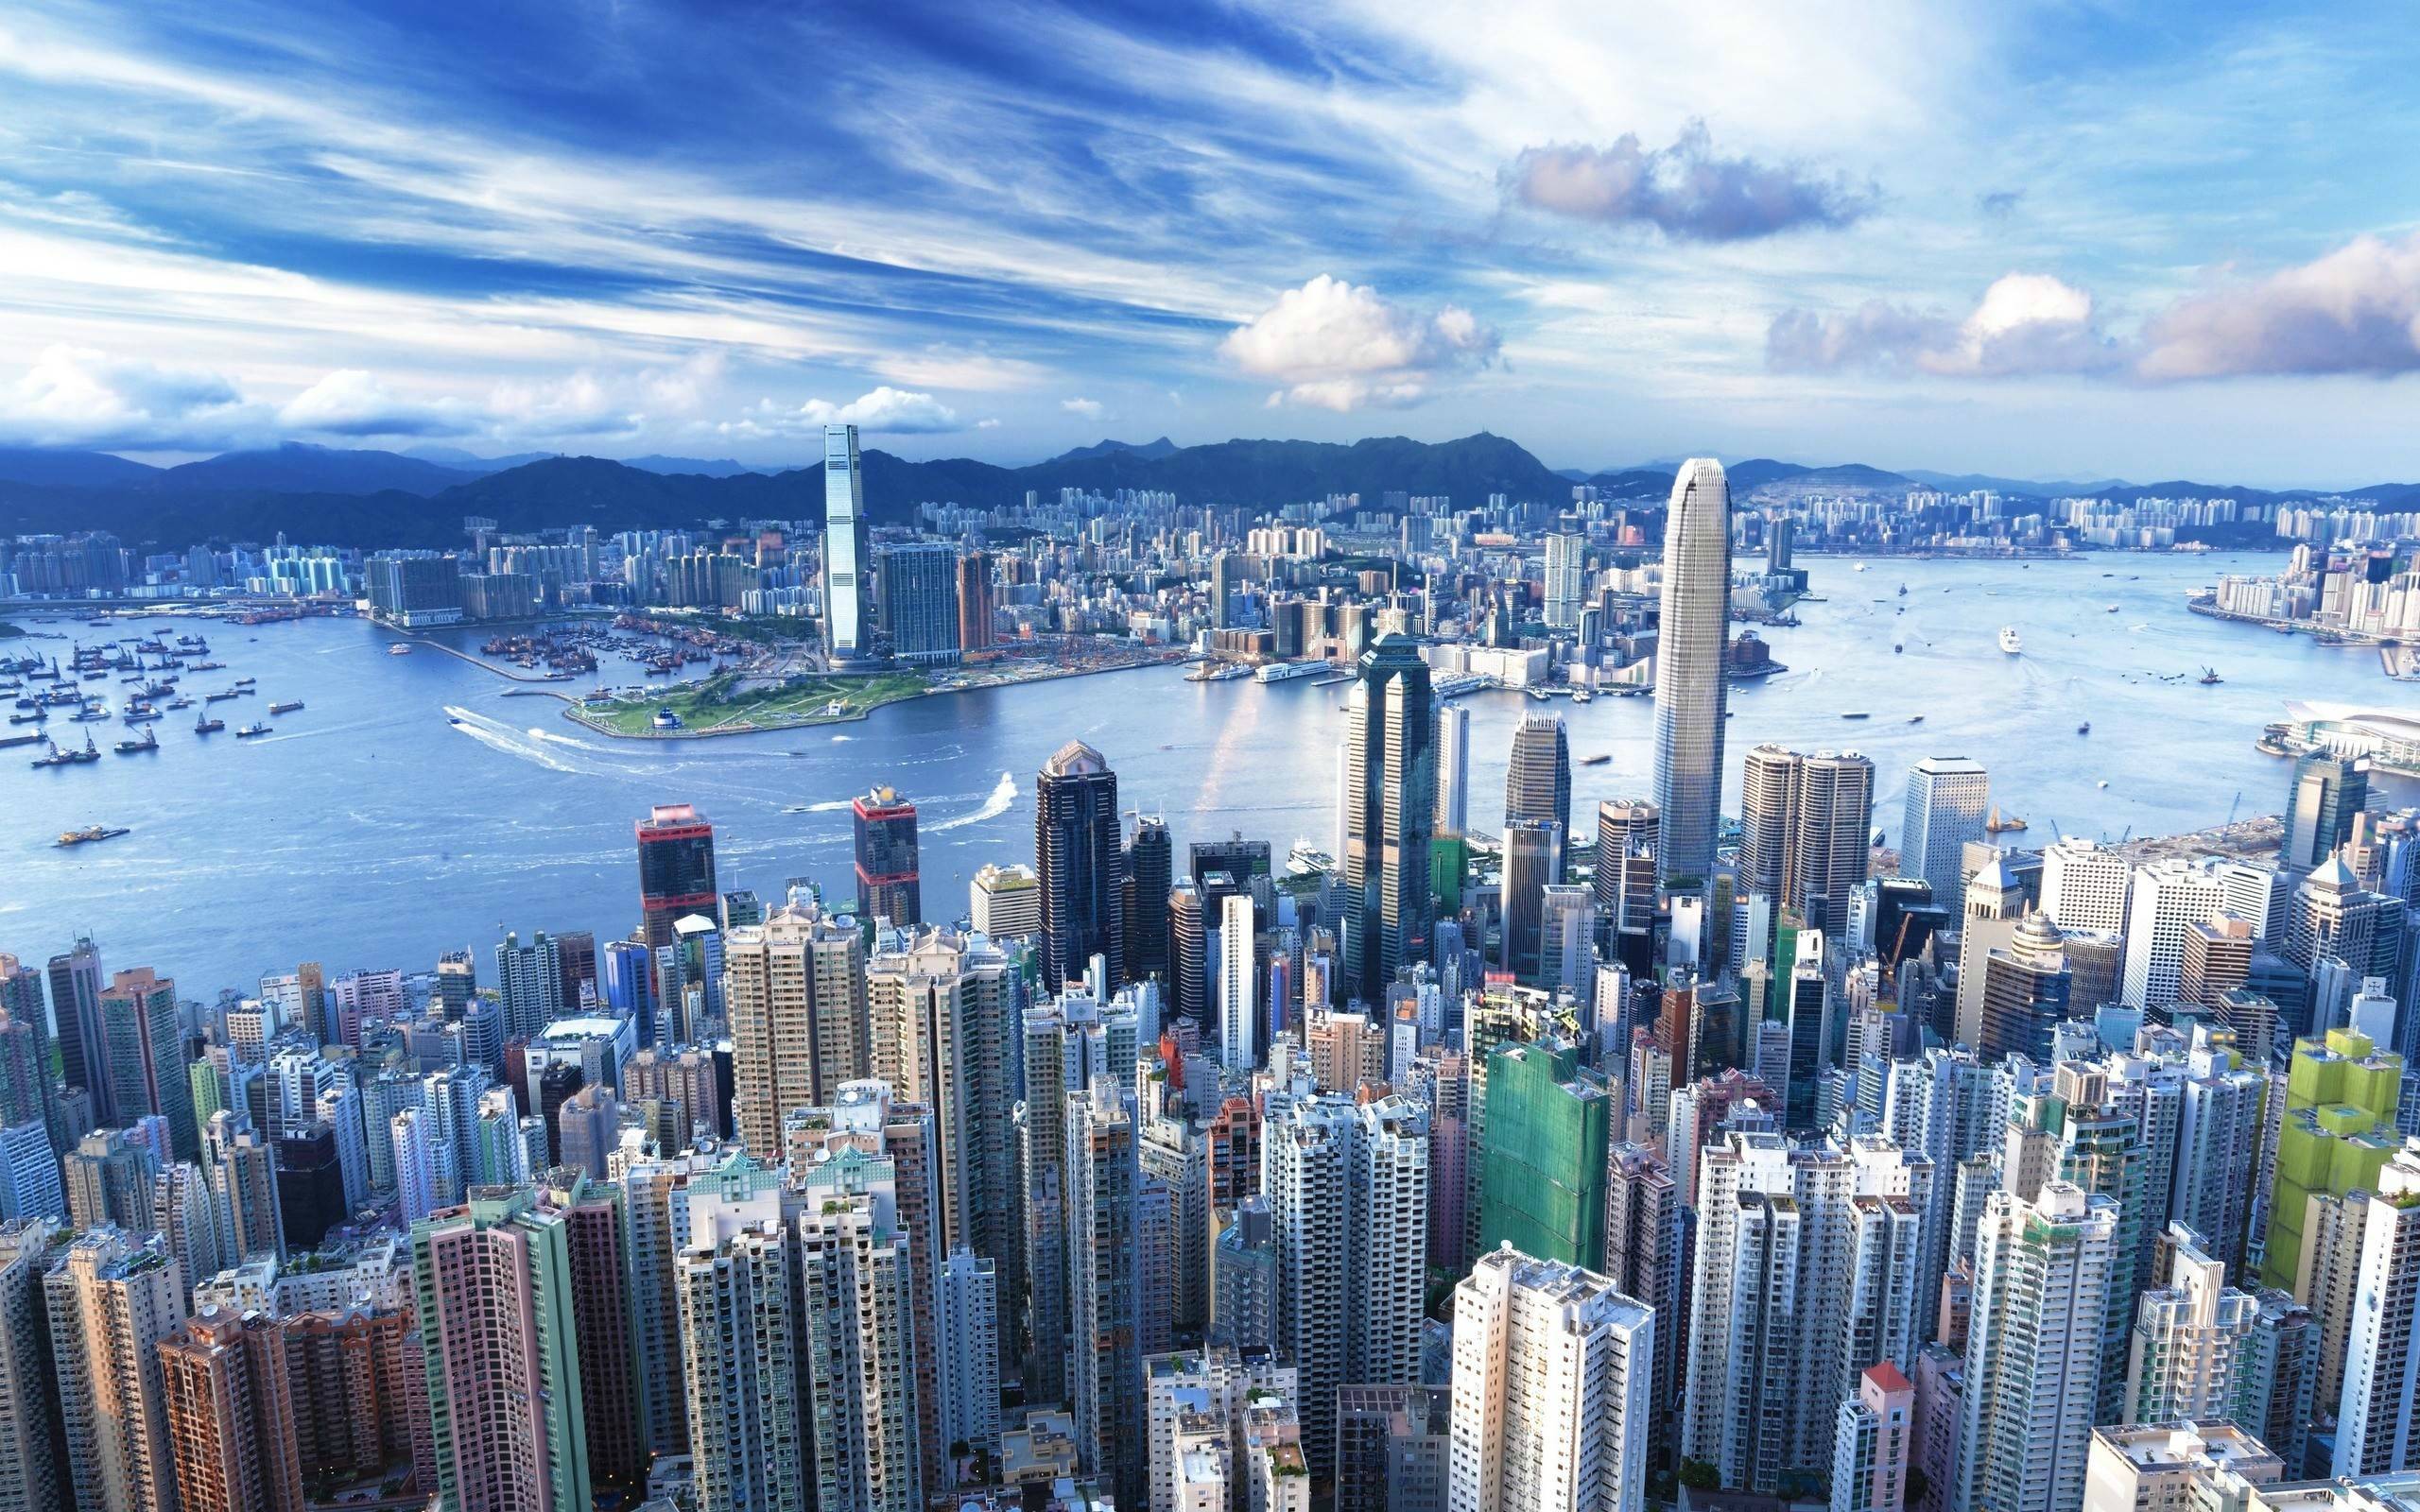 Hãy trang trí cho màn hình của bạn với những hình nền desktop Hong Kong đặc sắc! WallpaperDog cung cấp cho bạn những hình ảnh tuyệt đẹp của thành phố này, từ các tòa nhà cao chọc trời đến tuyến đường buôn bán sầm uất. Điều đó sẽ giúp bạn thư giãn và lấy thêm động lực cho công việc của mình.